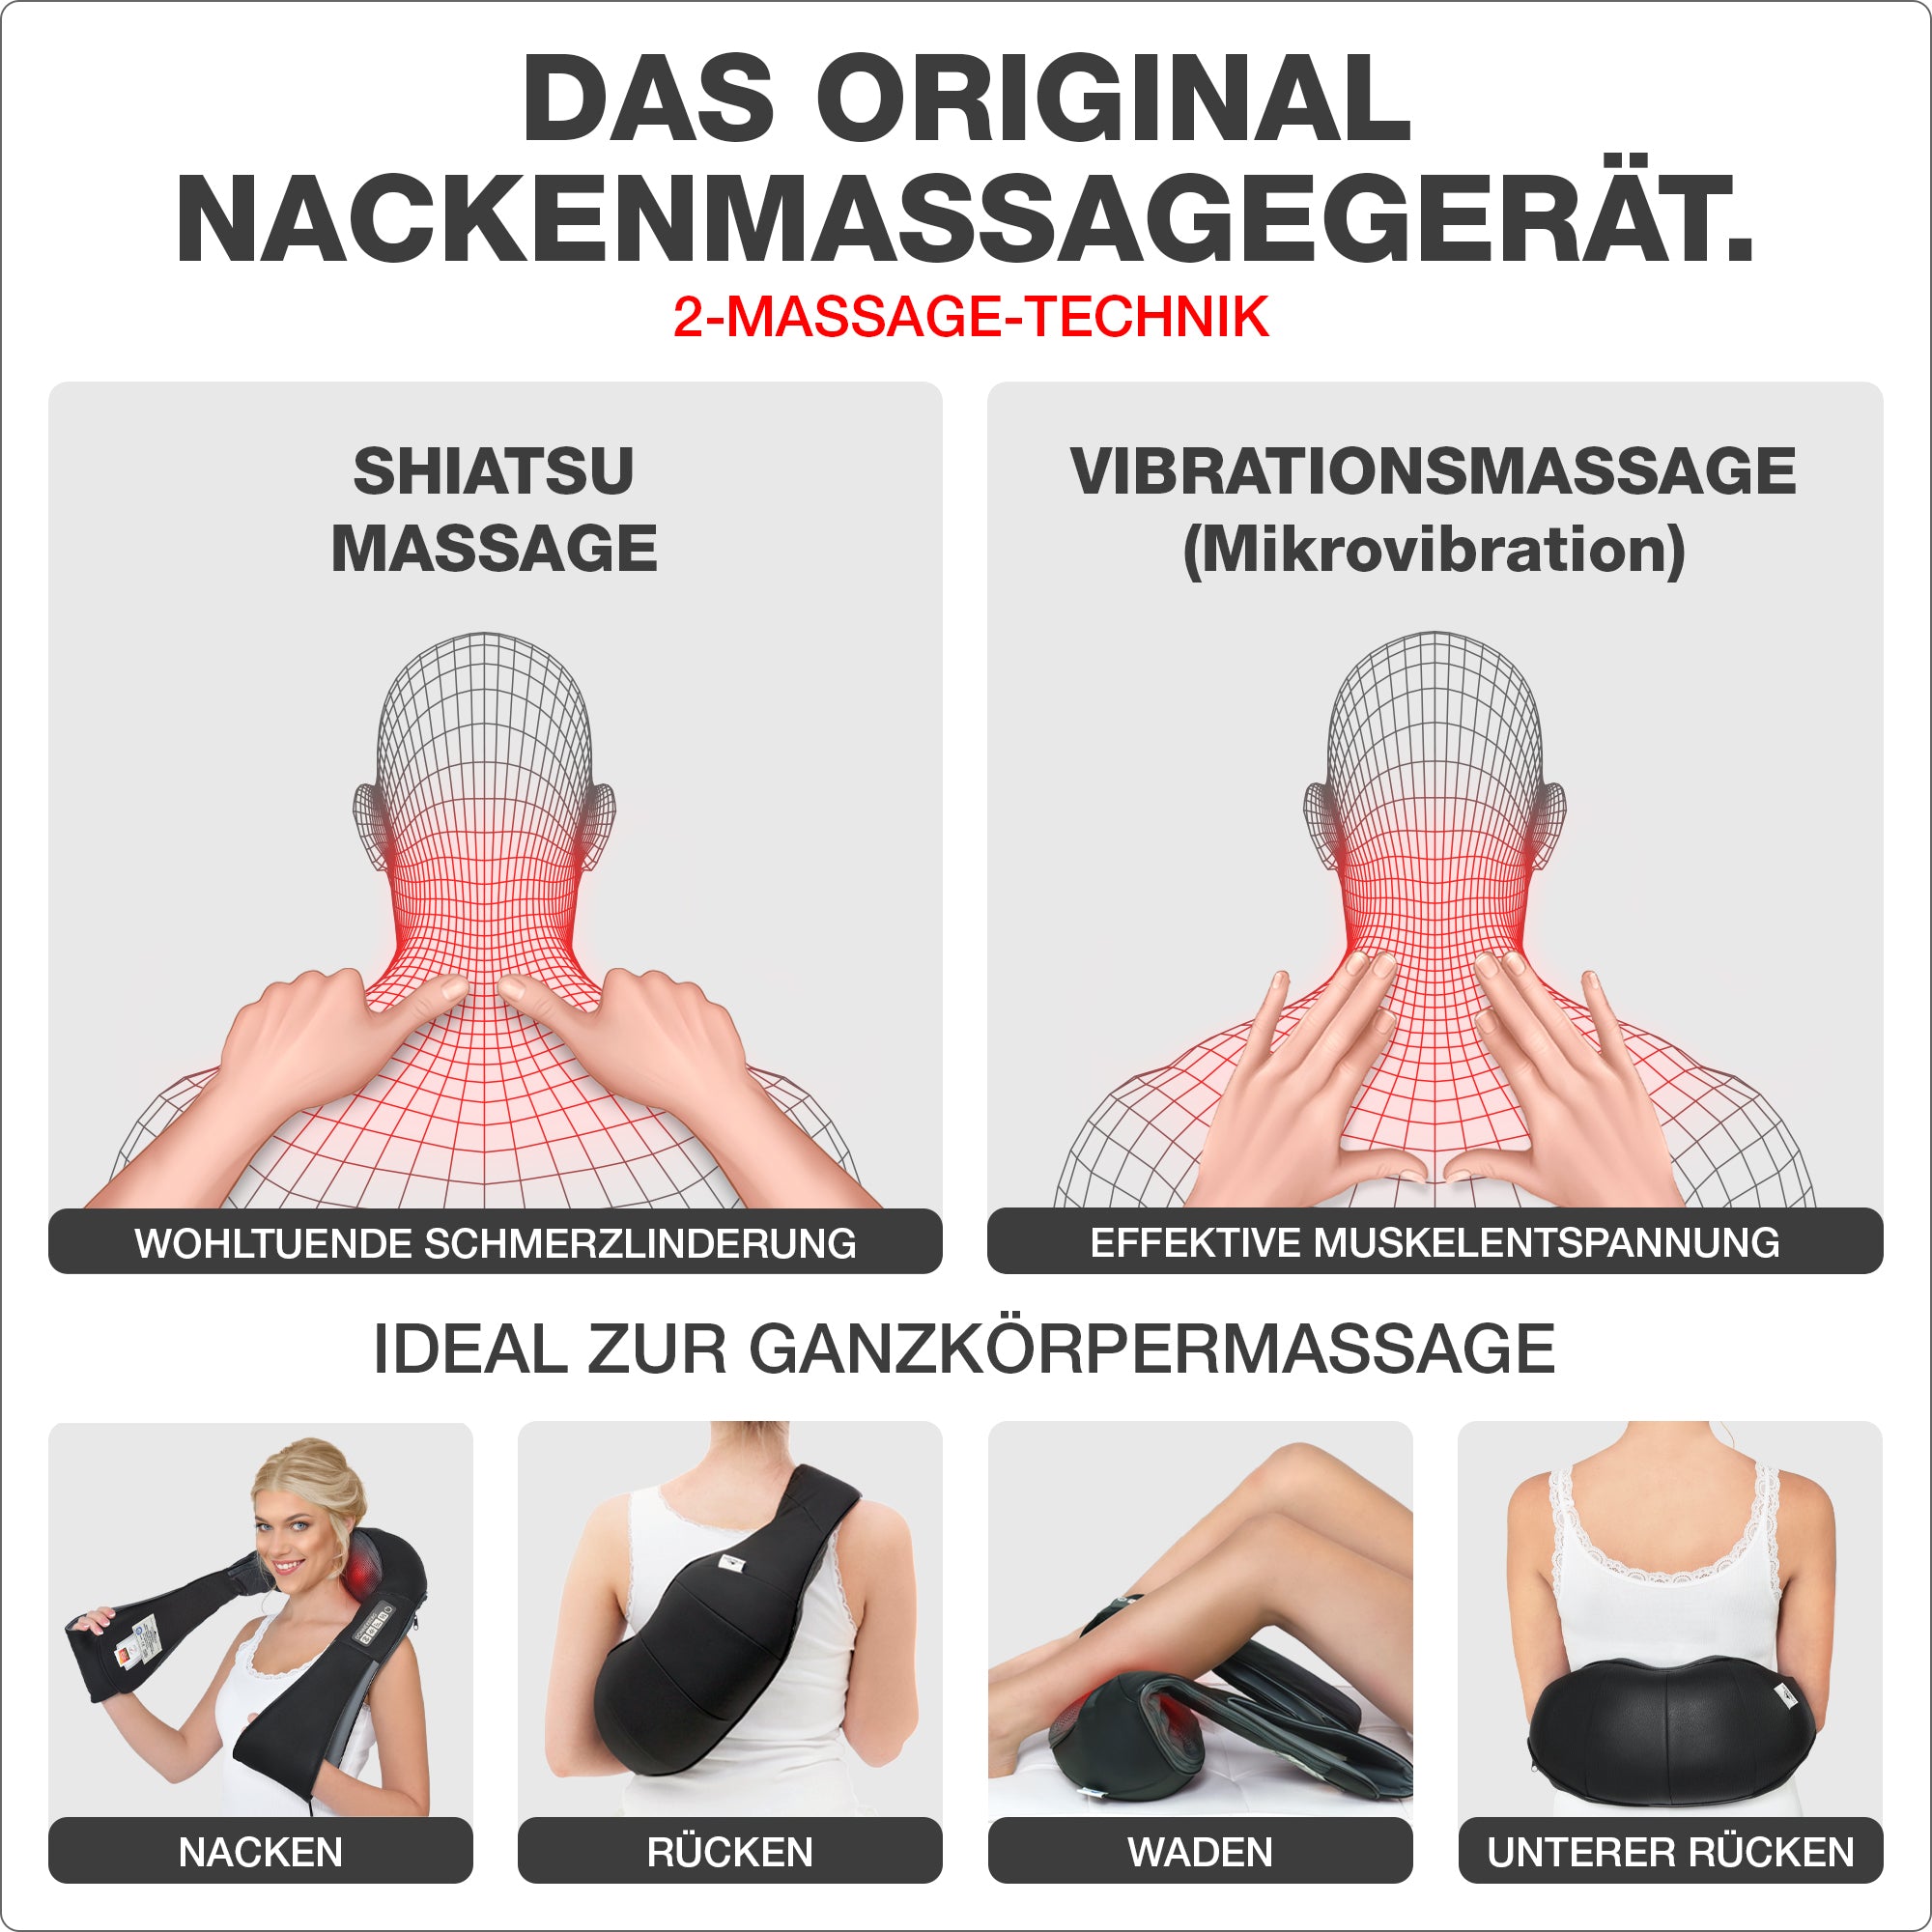 Full body massager used on neck shoulders back legs black